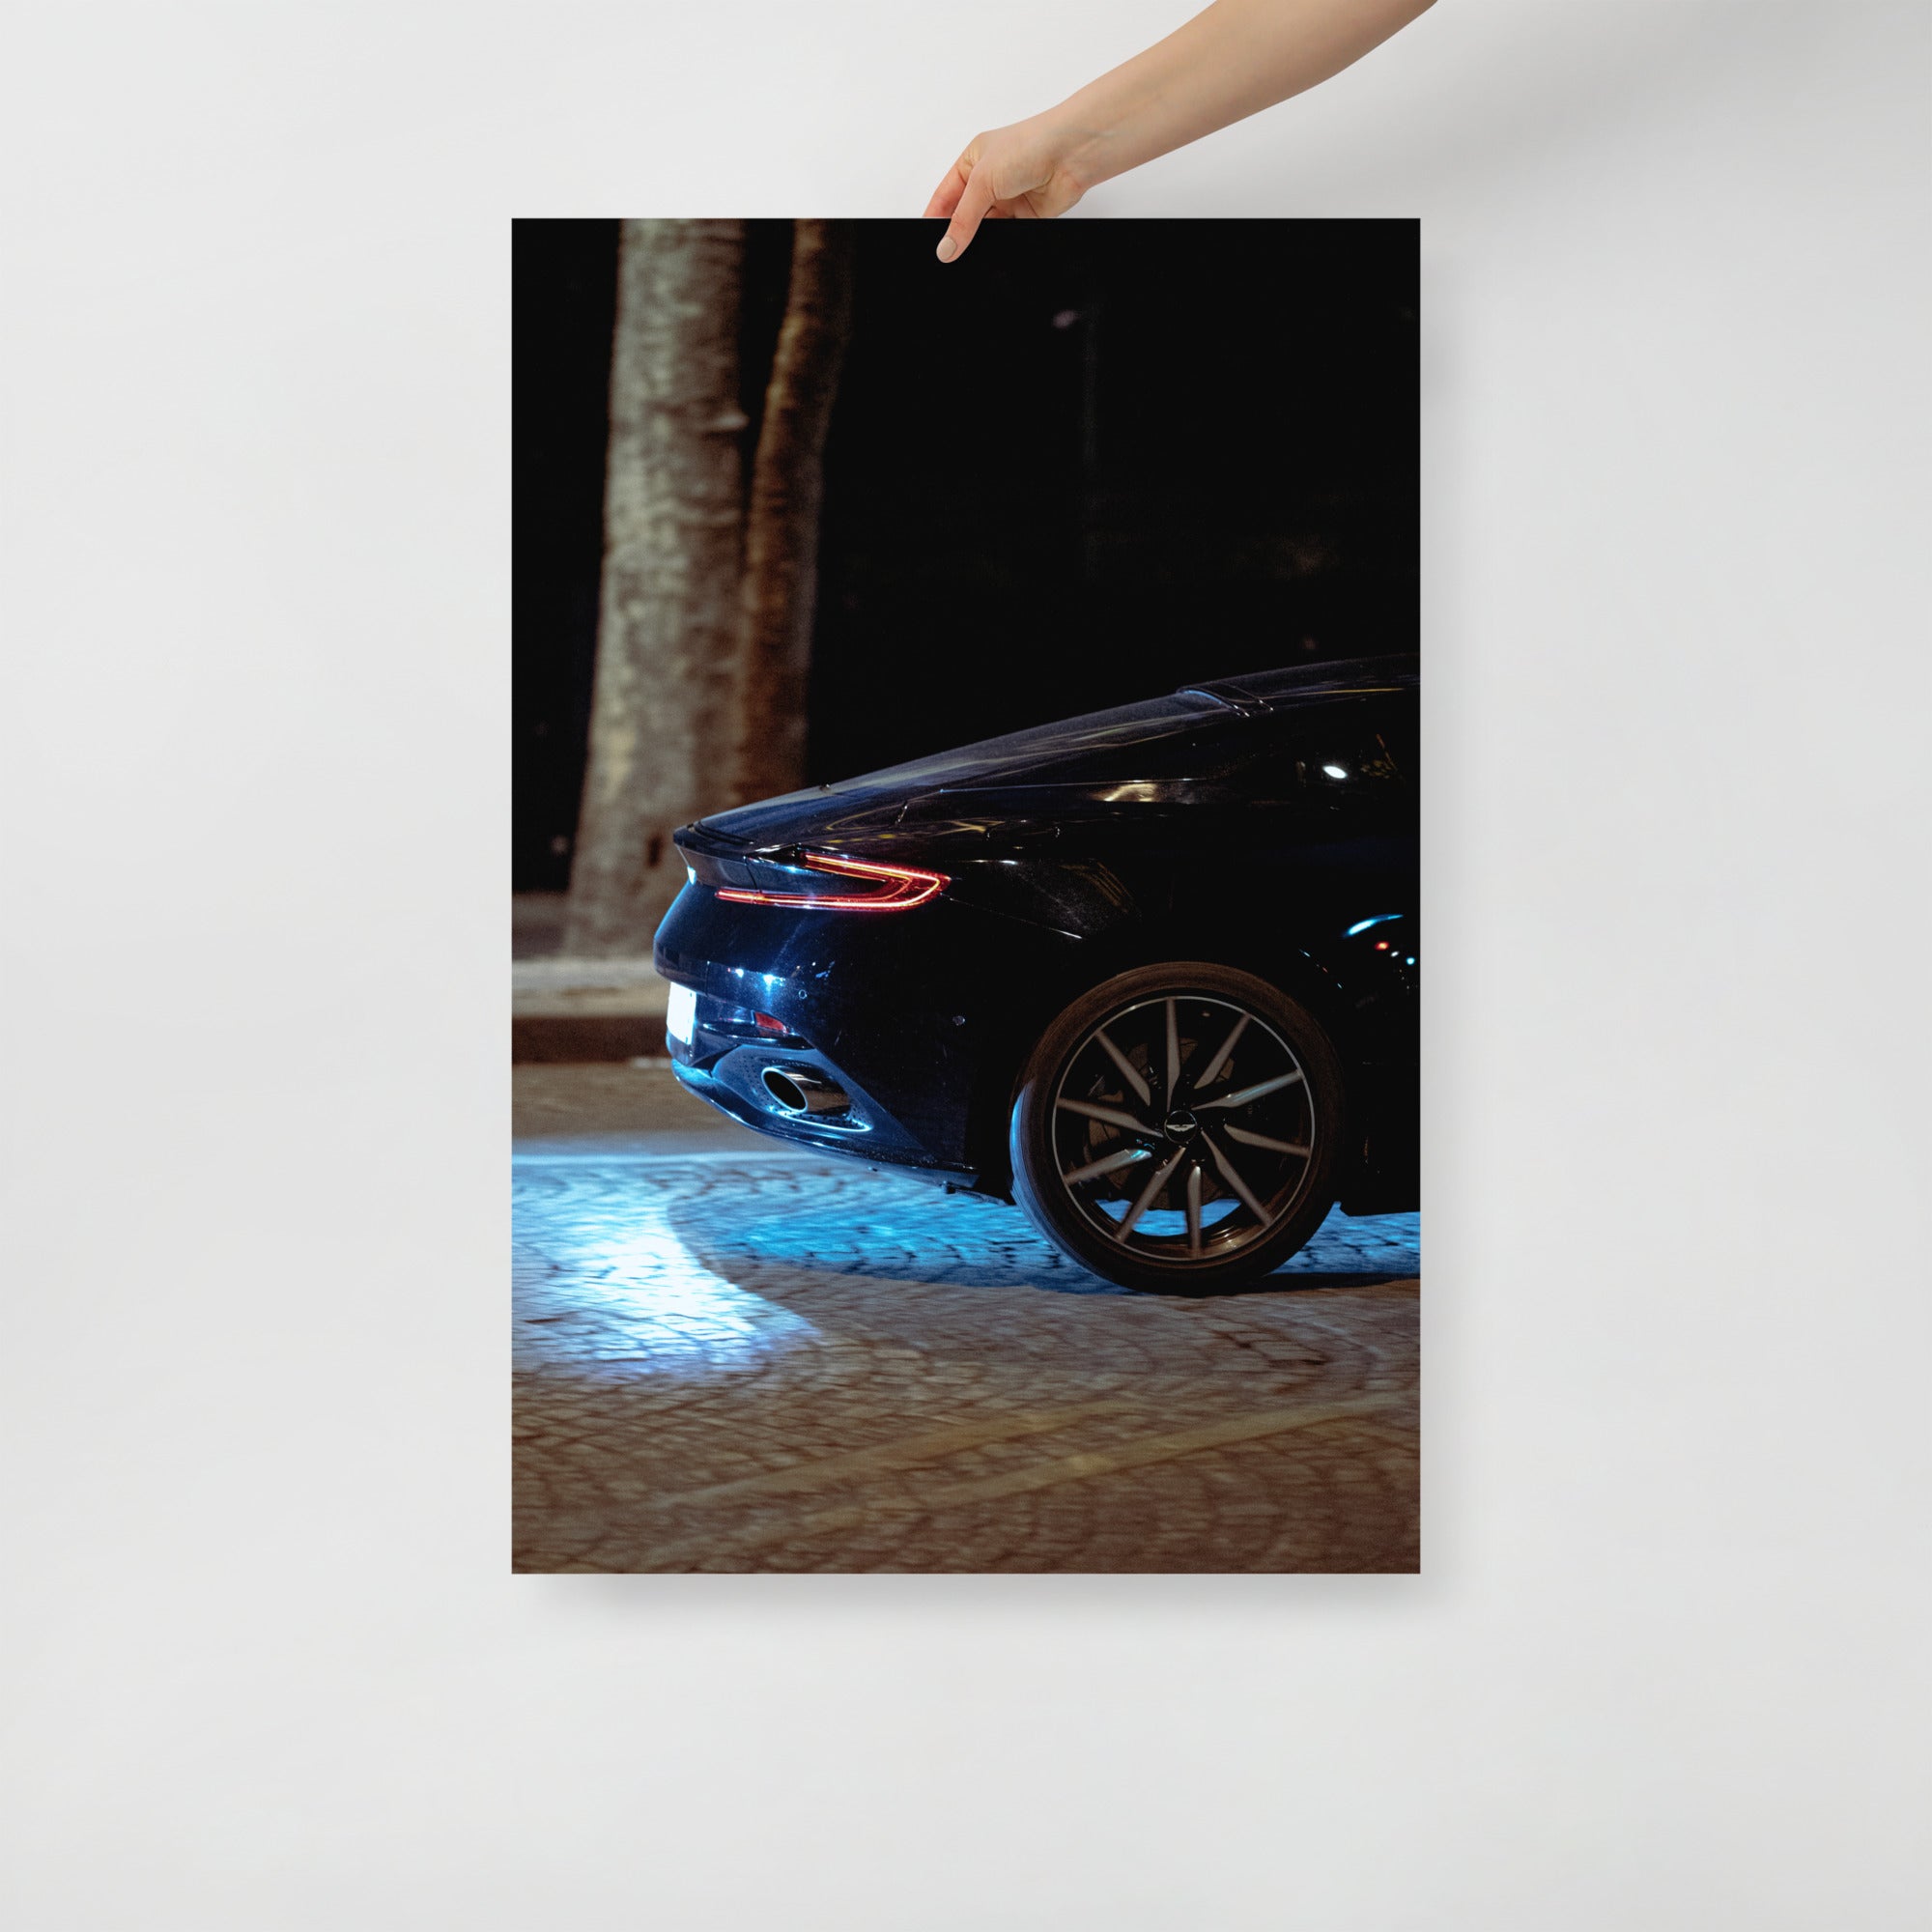 Poster mural - Aston Martin – Photographie de voiture de sport – Poster photo, poster XXL, Photo d’art, photographie murale et des posters muraux des photographies de rue unique au monde. La boutique de posters créée par un Photographe français.